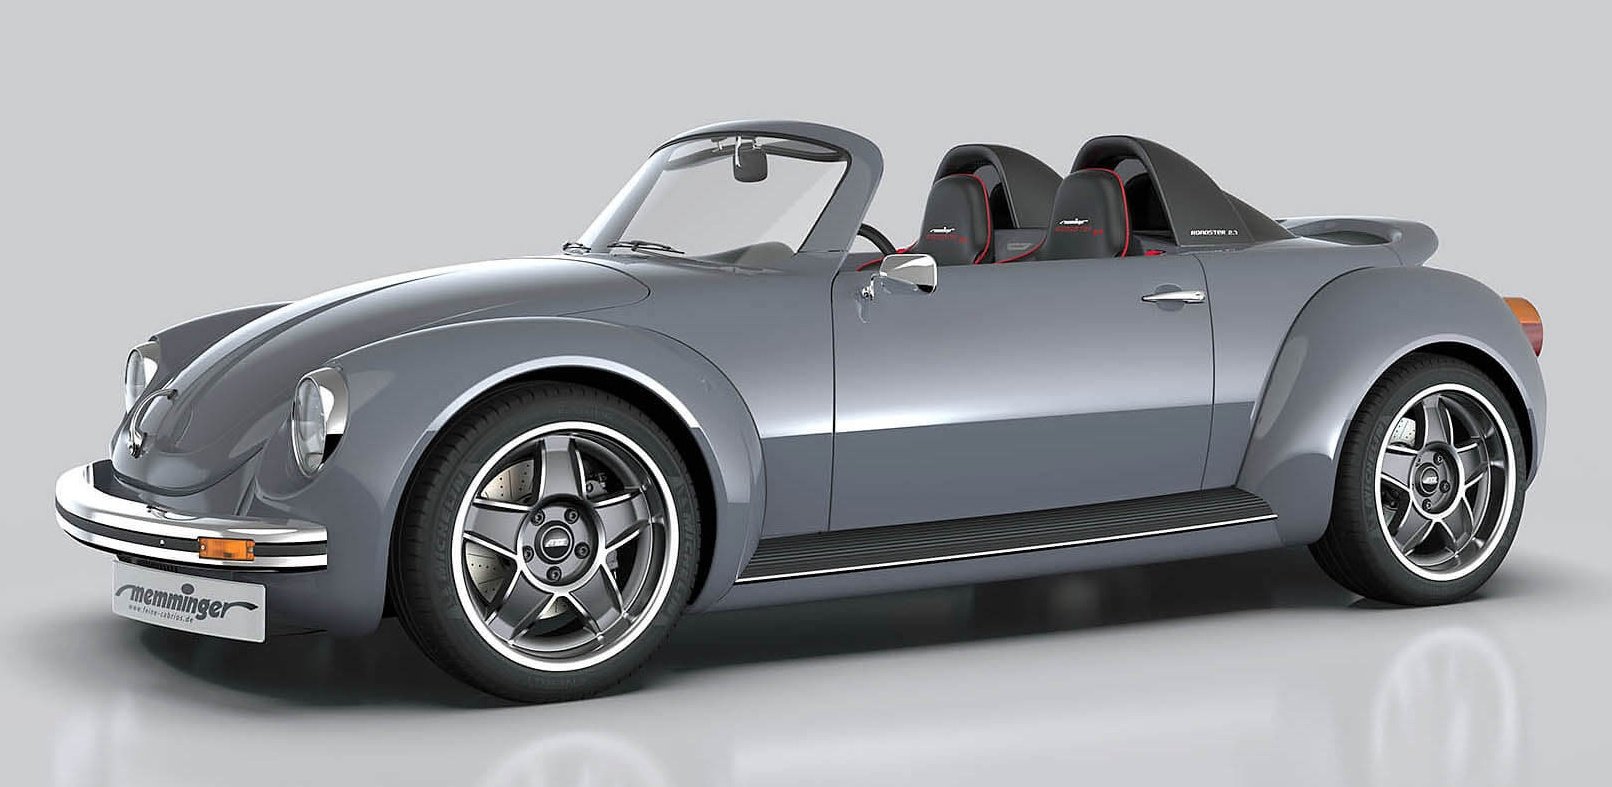 Memminger Roadster 2.7, 基 于 首 代 Volkswagen Beetle 的 全 新 双 座 高 性 能 开 篷 车... 